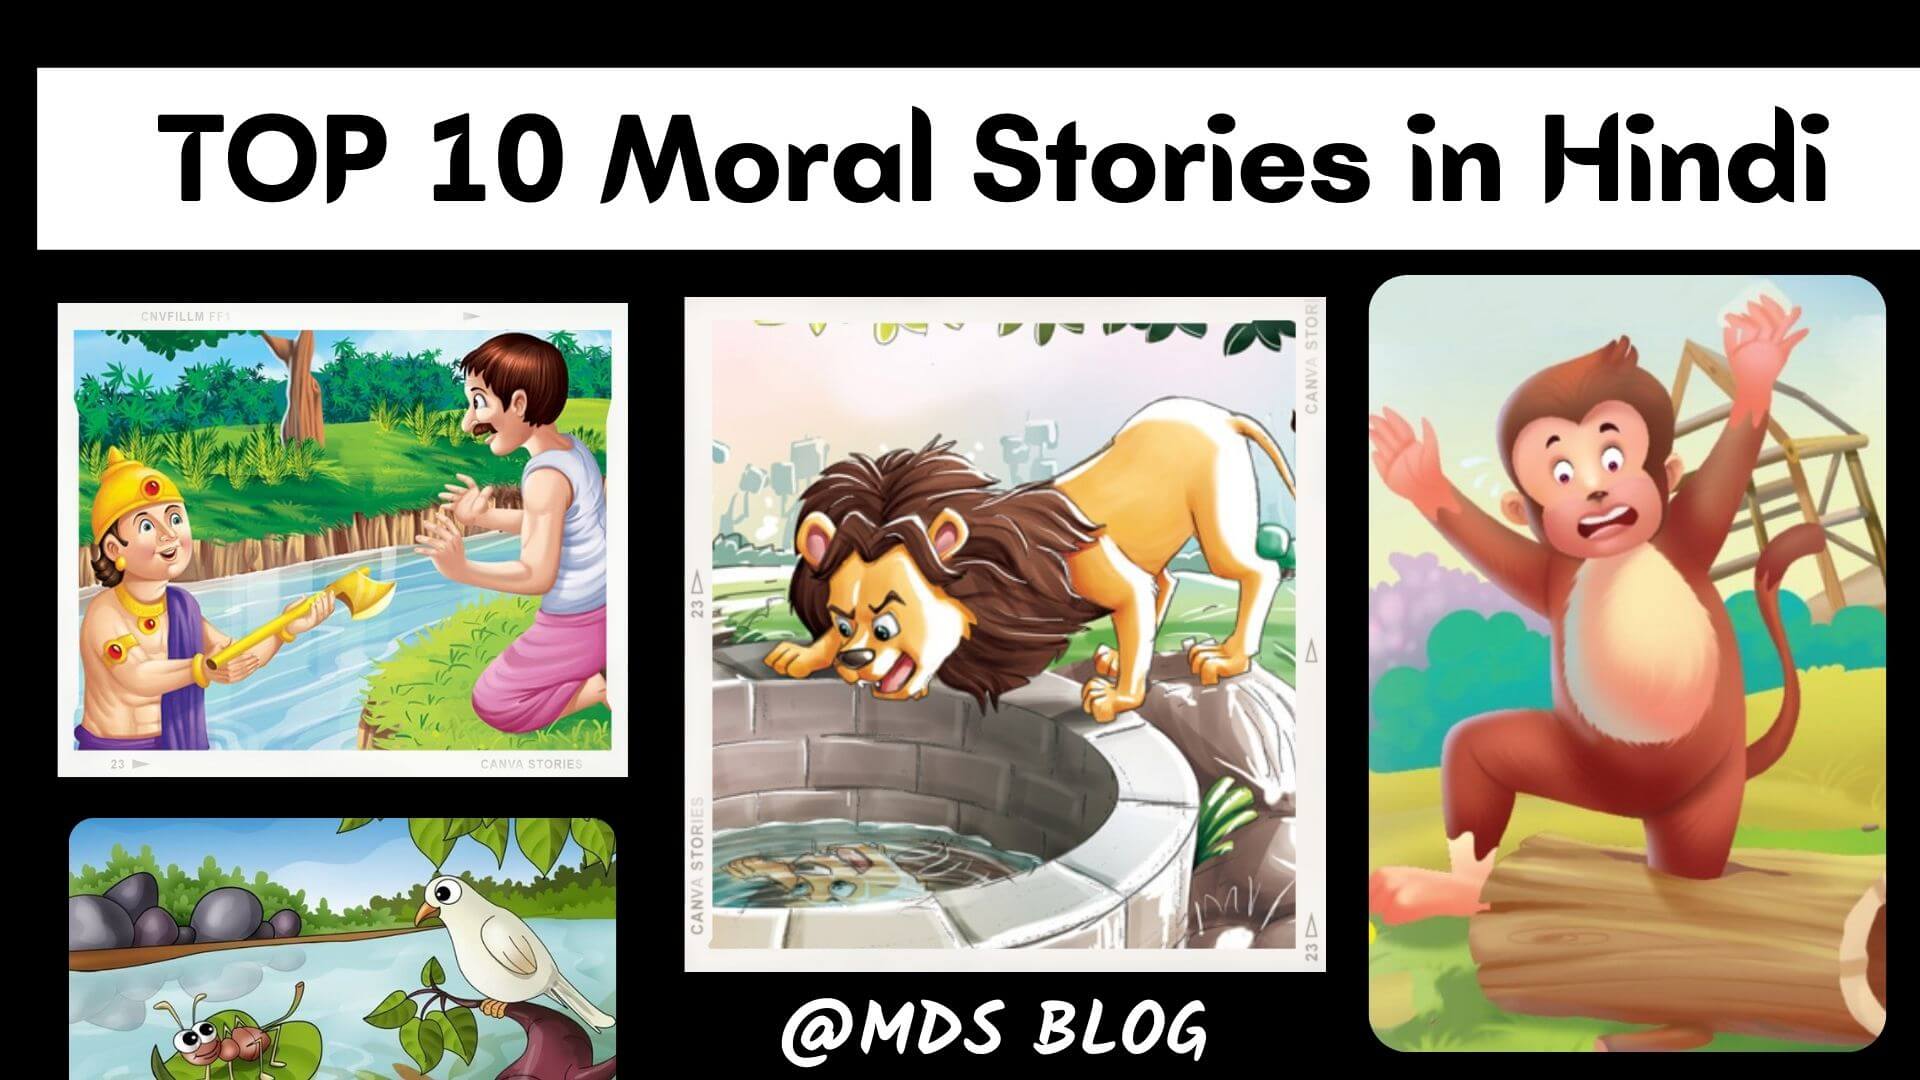 Moral Stories in Hindi, TOP 10 Moral Stories in Hindi, Short Moral Story in Hindi, Moral Stories for Kids in Hindi 